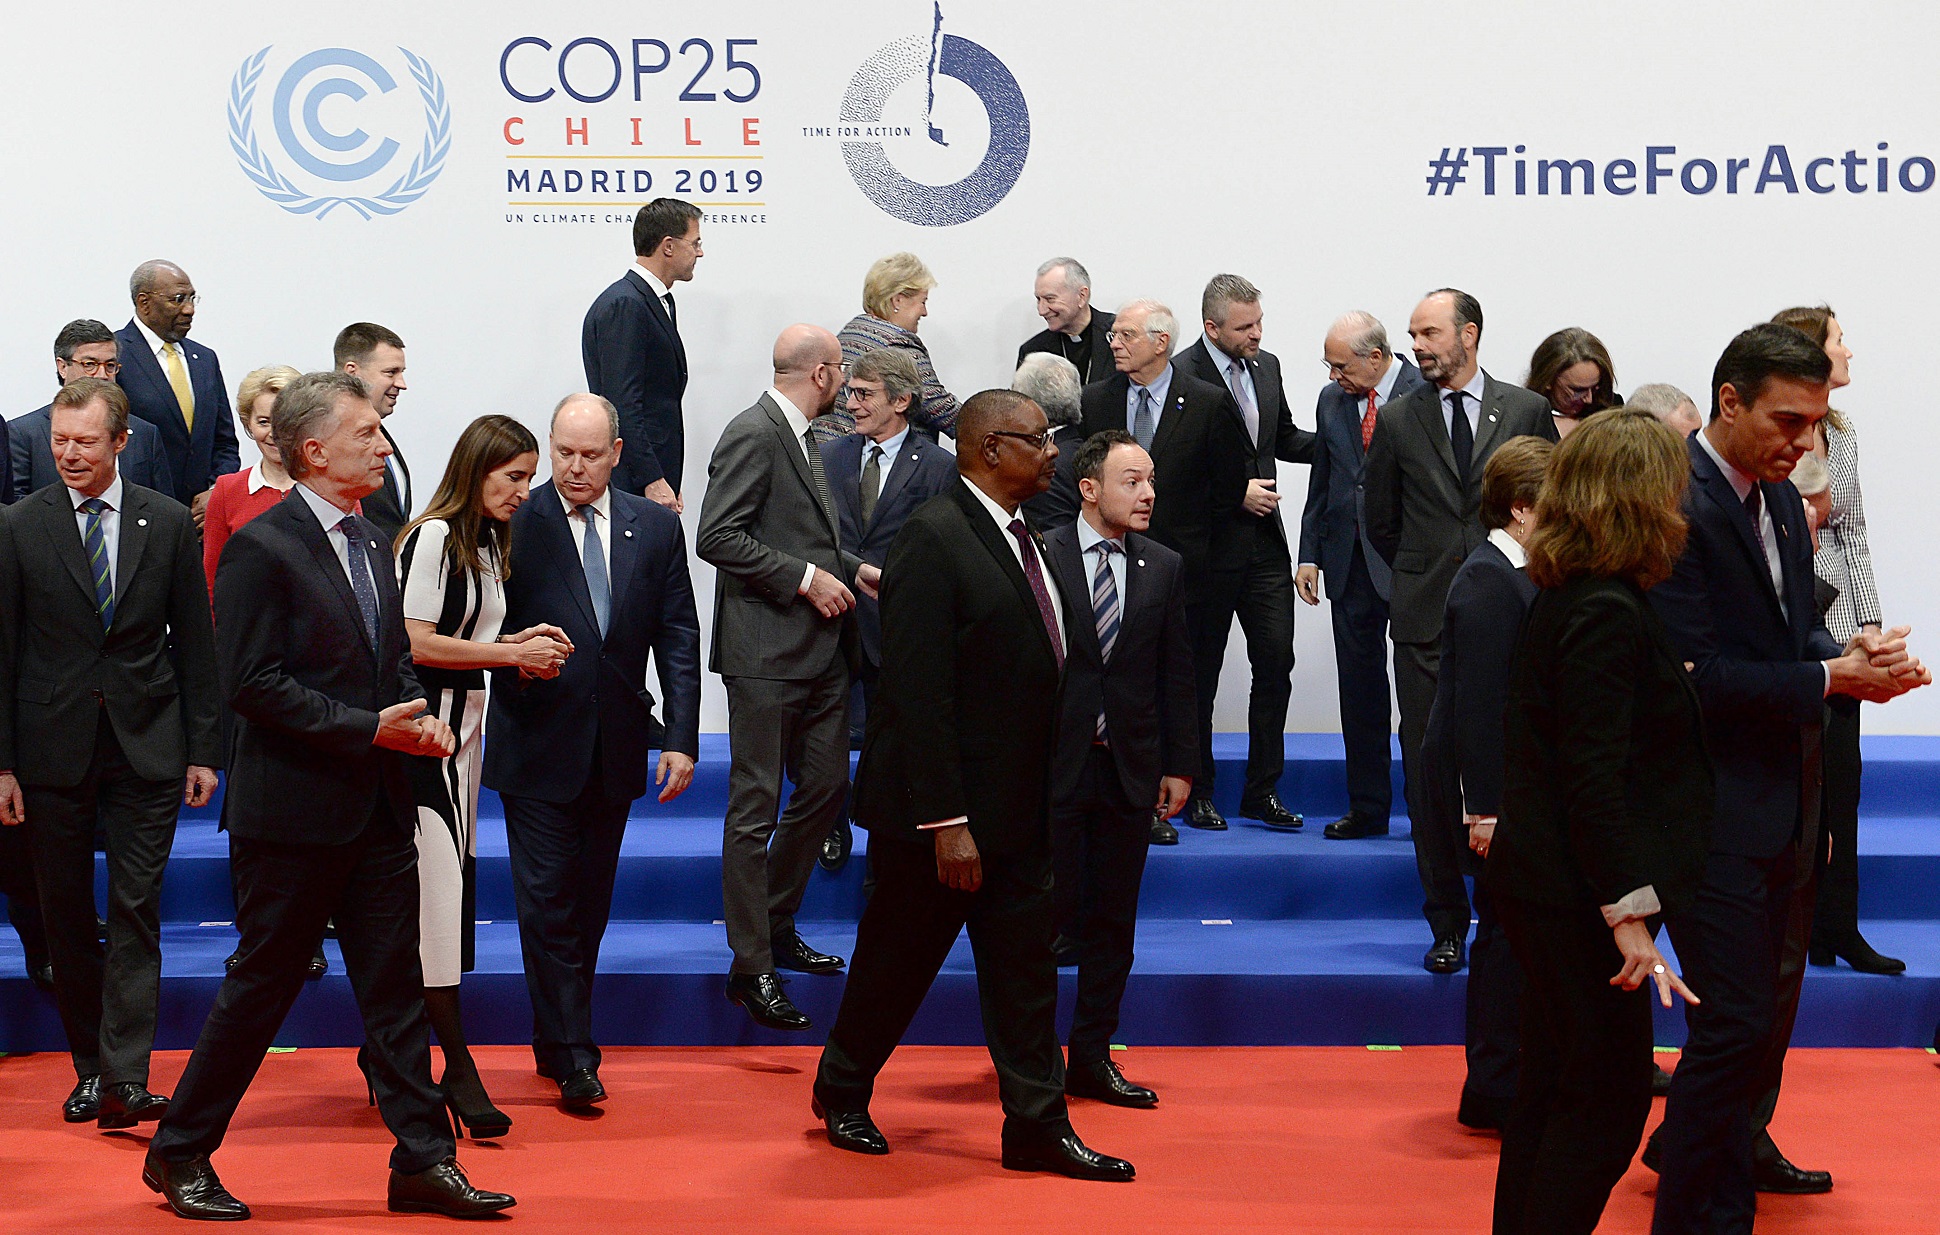 Macri exhortó a los líderes mundiales a seguir actuando “juntos y sin demoras” para preservar el medio ambiente